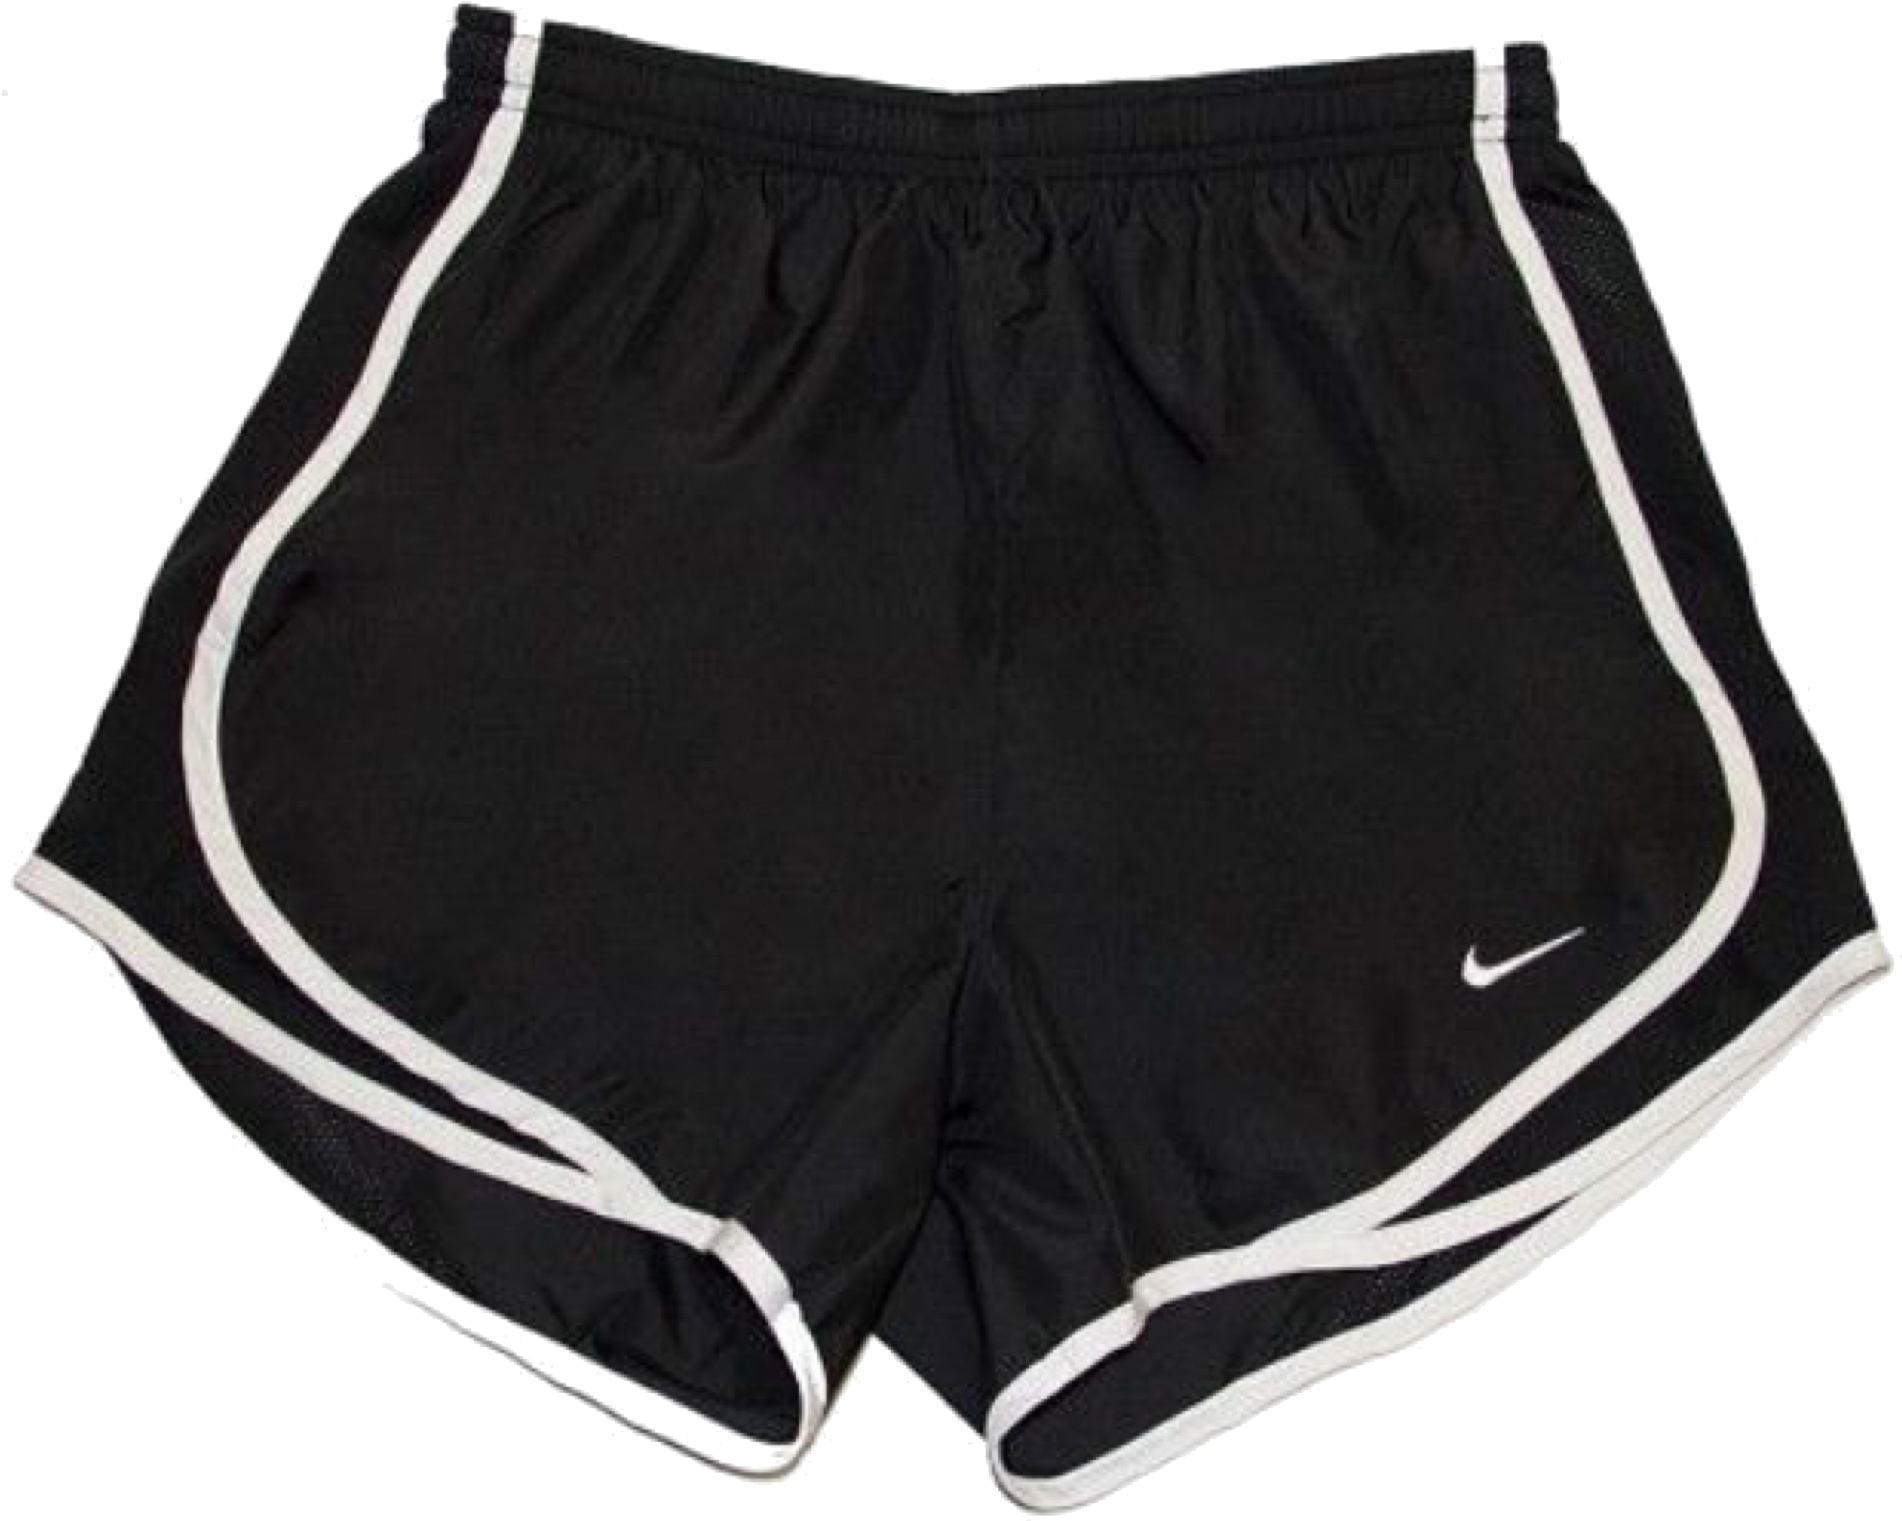 Black Nike Running Shorts